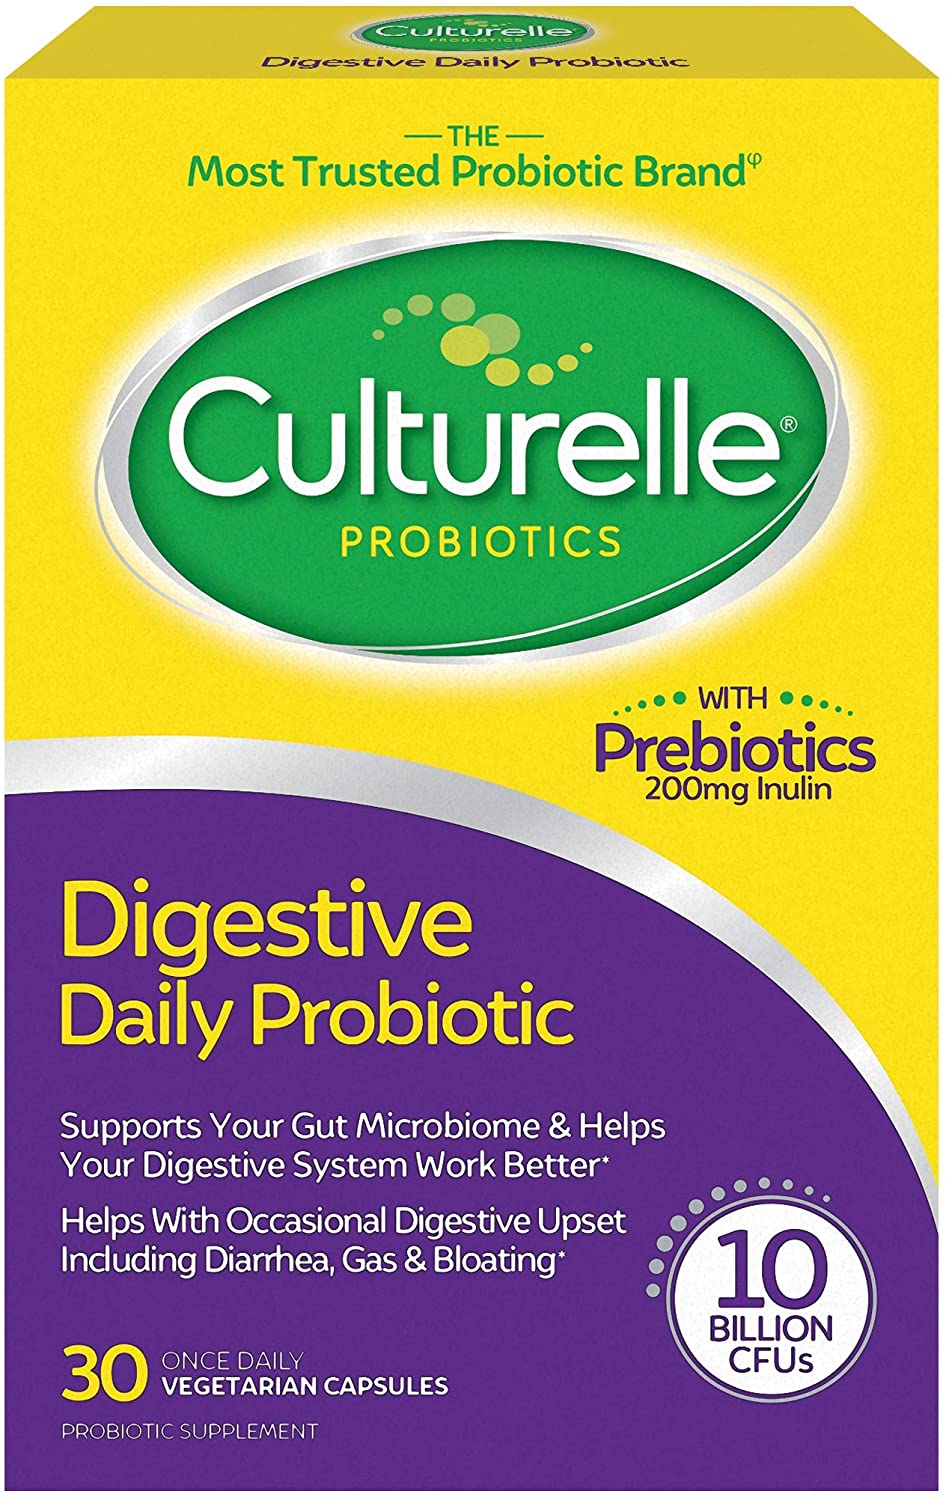 Culturelle Probiotic Review